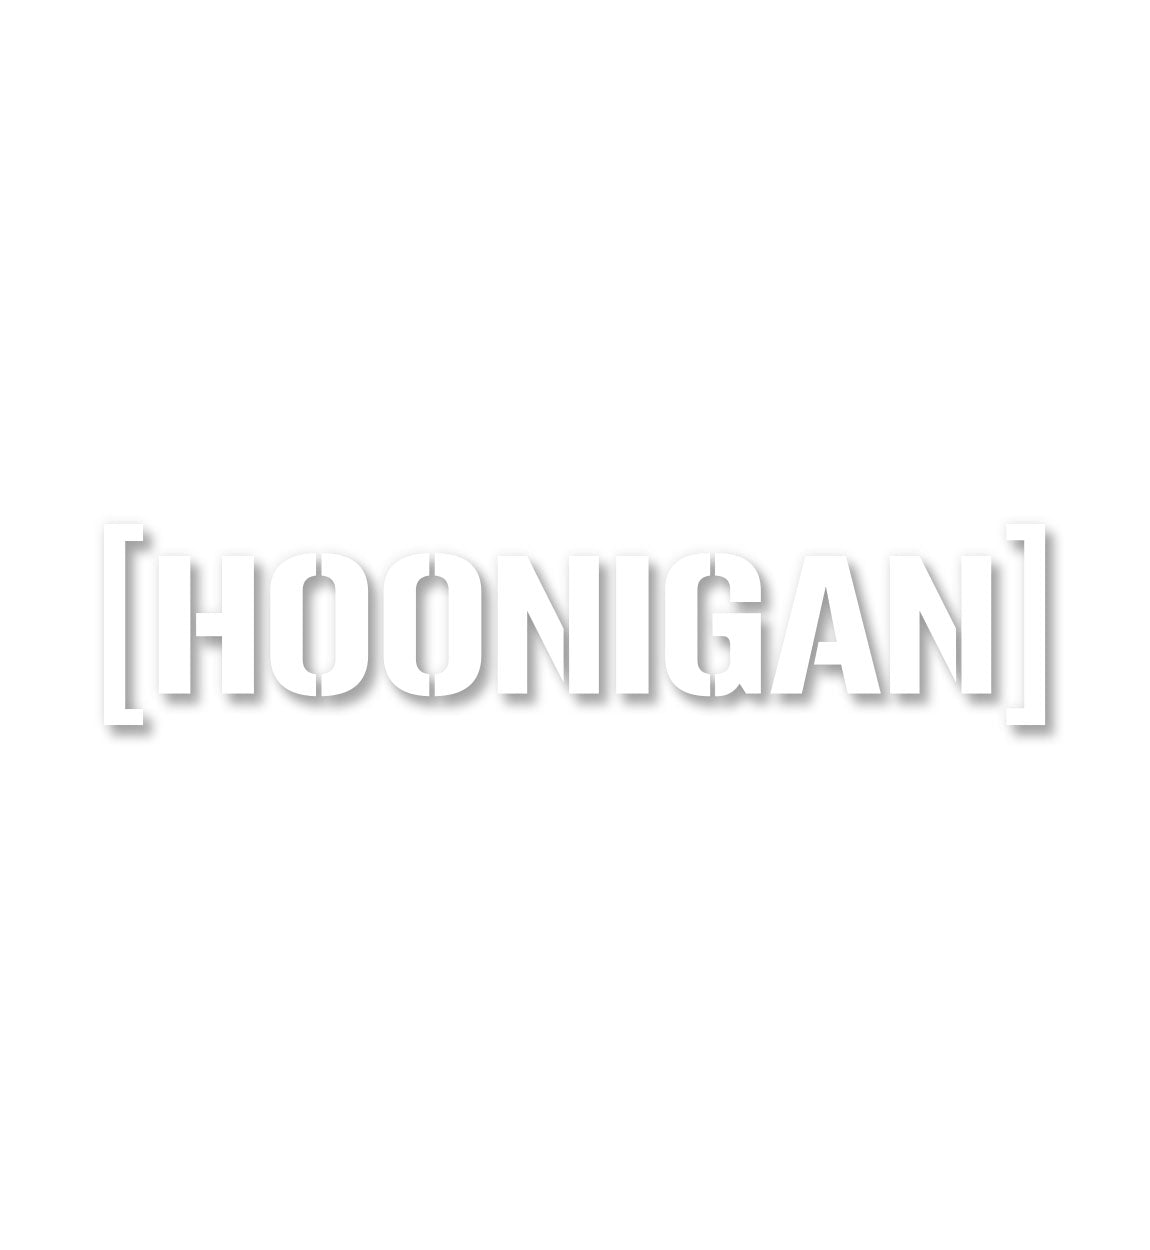 Hoonigan MEDIUM DIE CUT BRACKET Sticker (18")